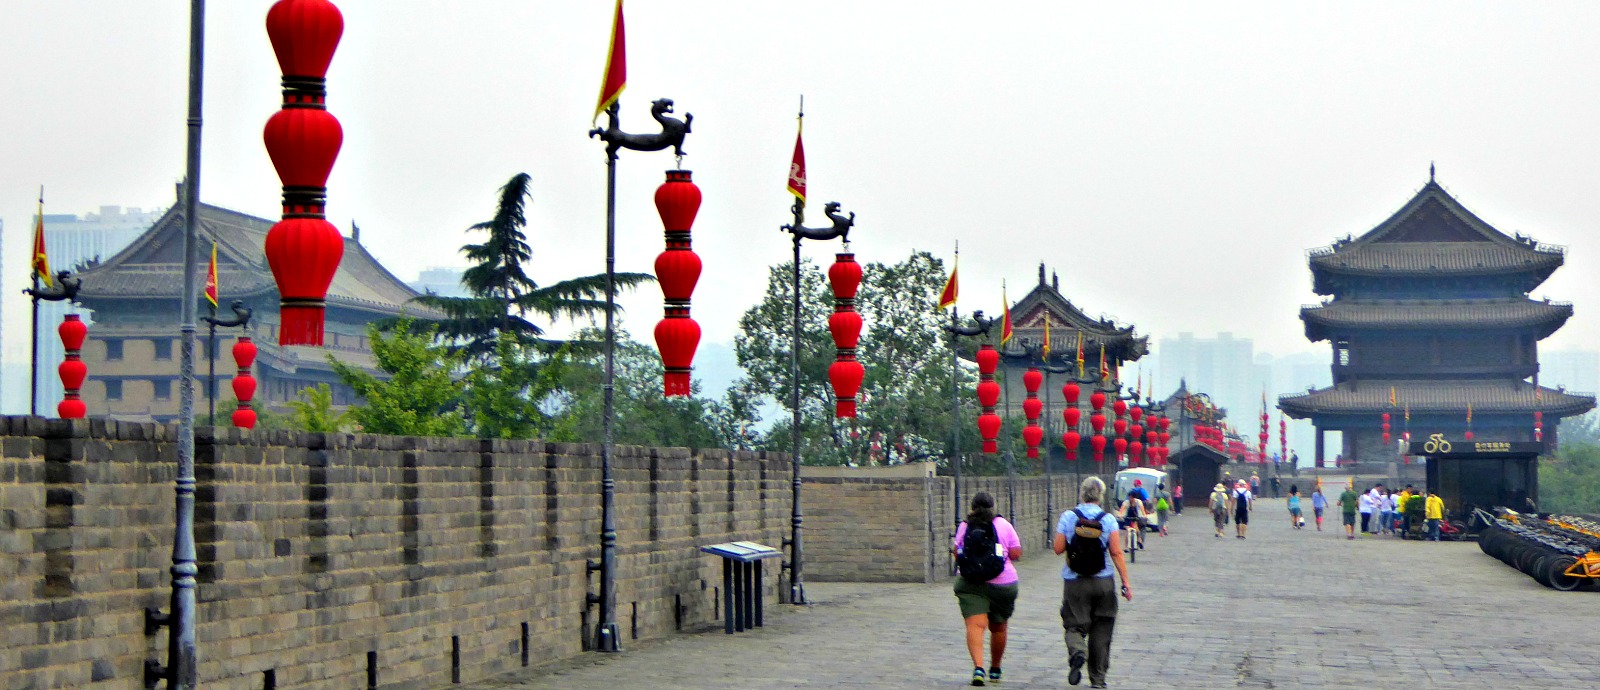 Beijing & Great Wall